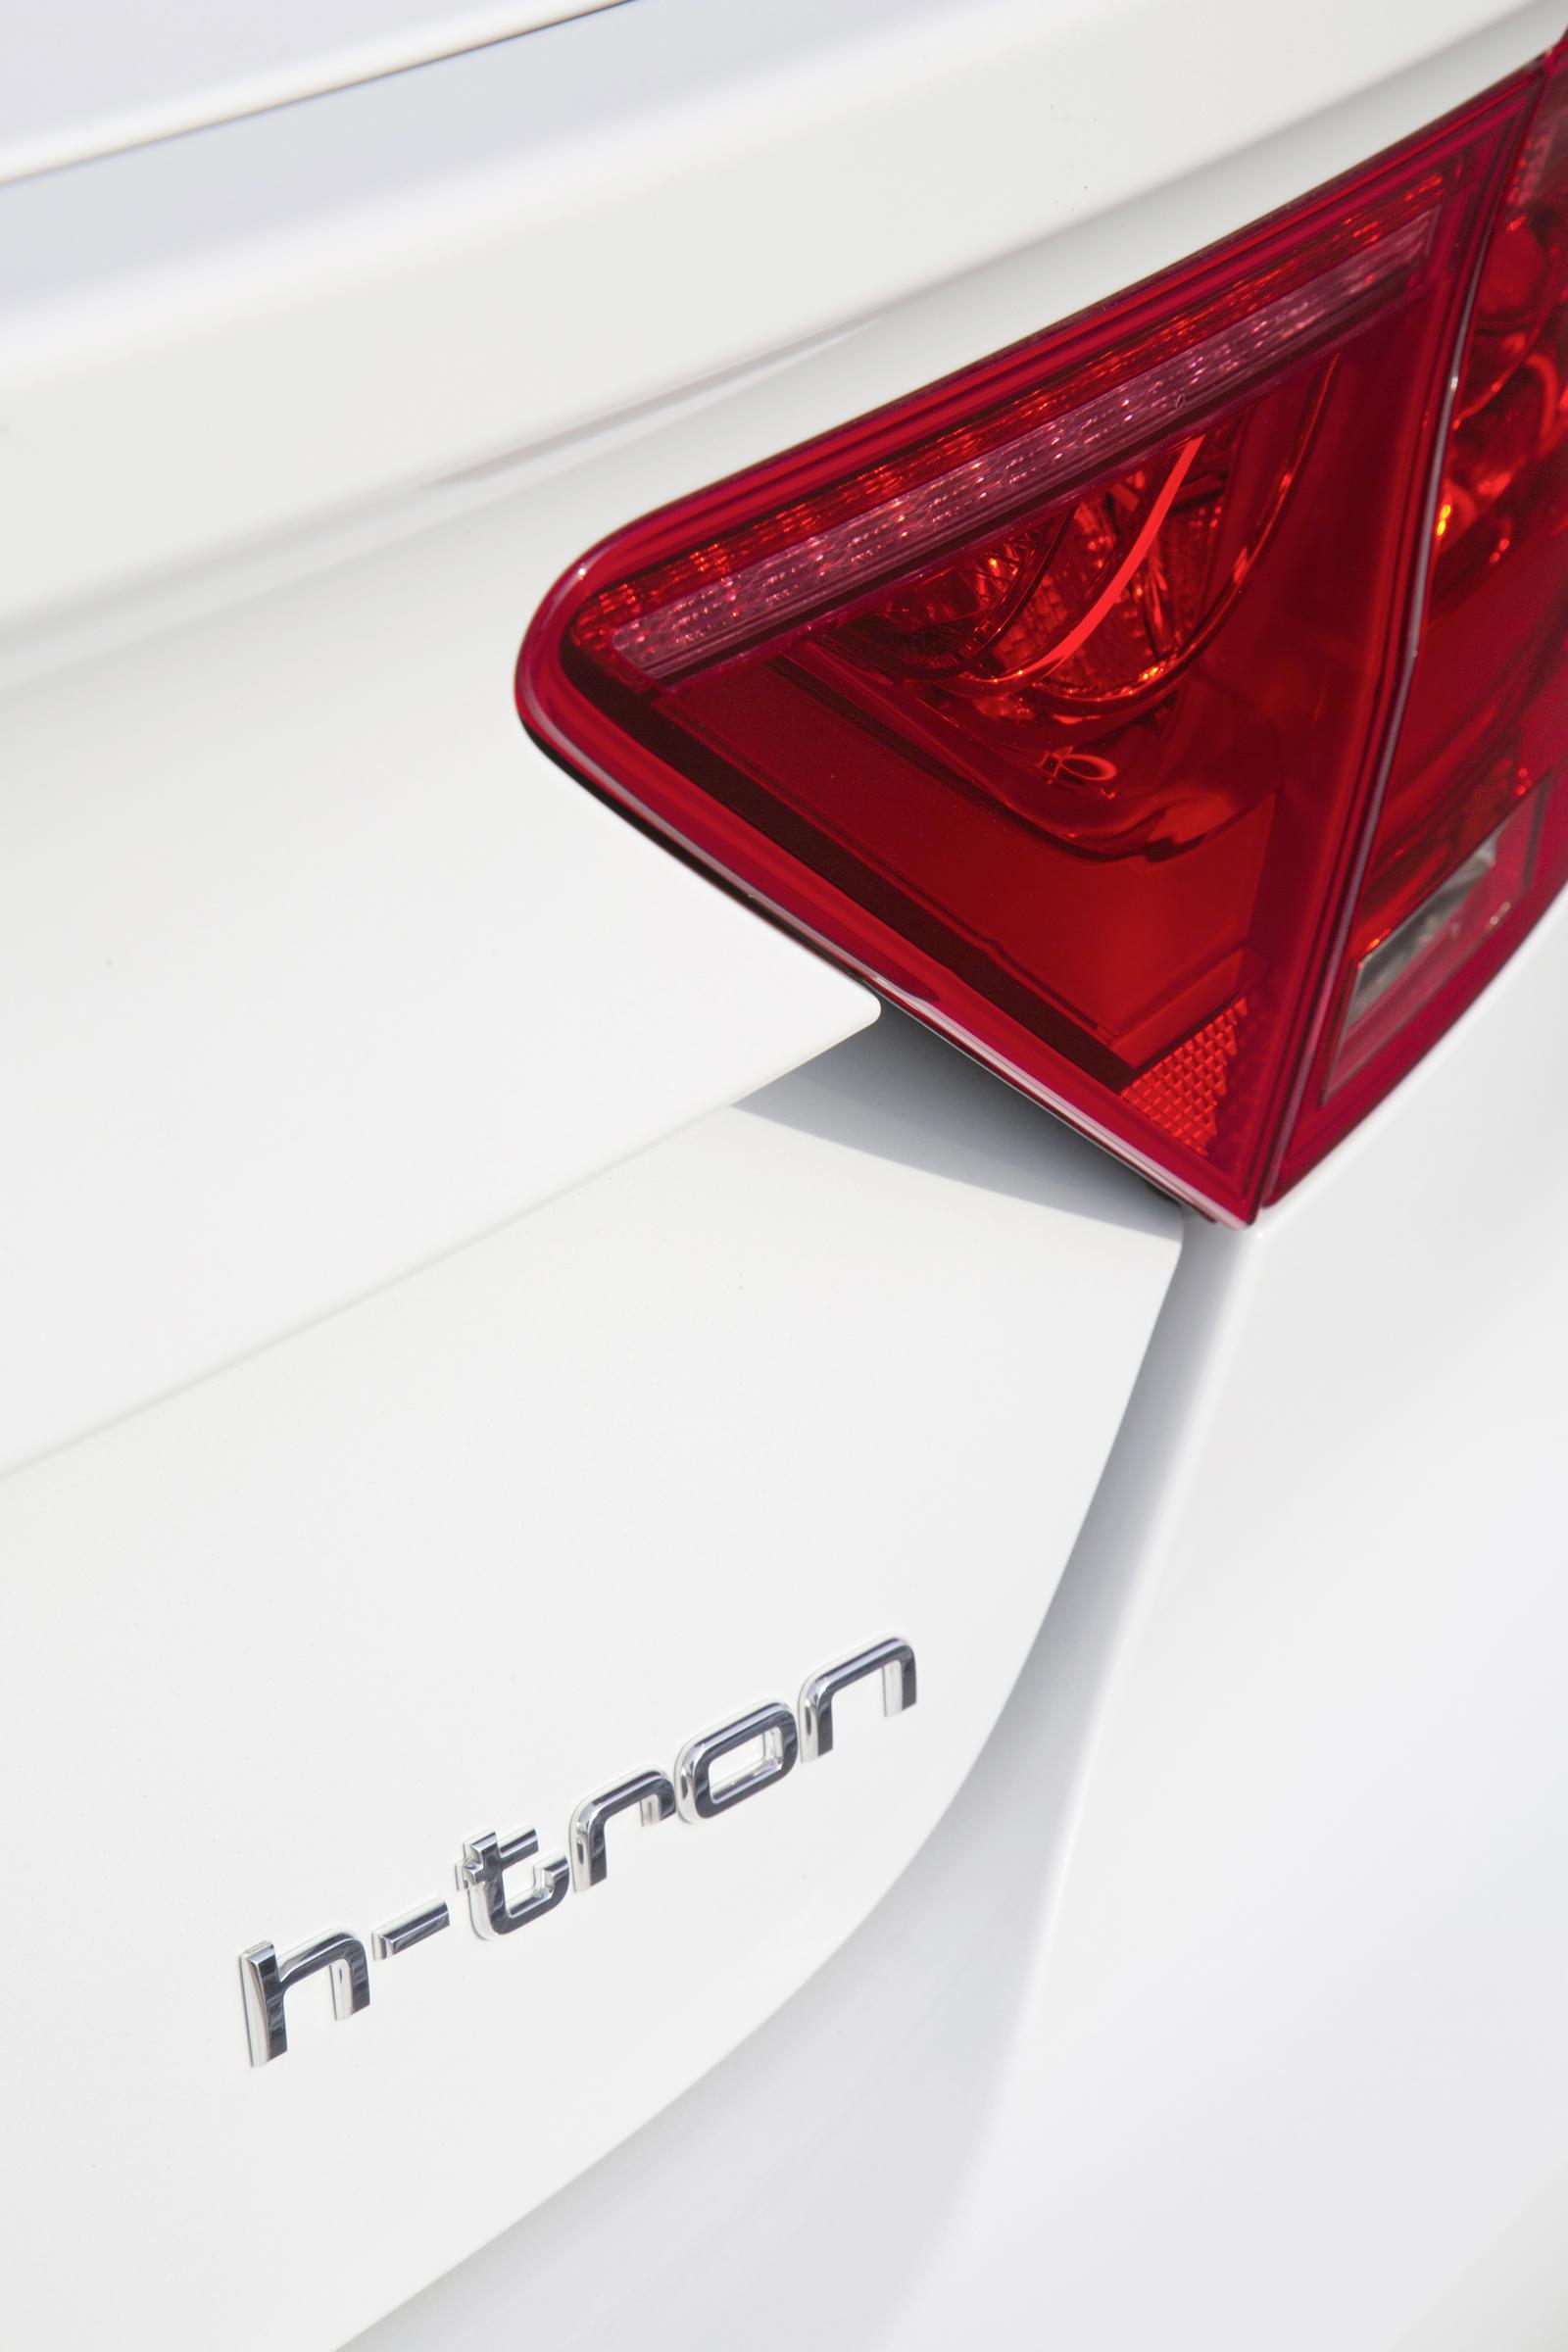 Audi A7 Sportback h-tron quattro concept